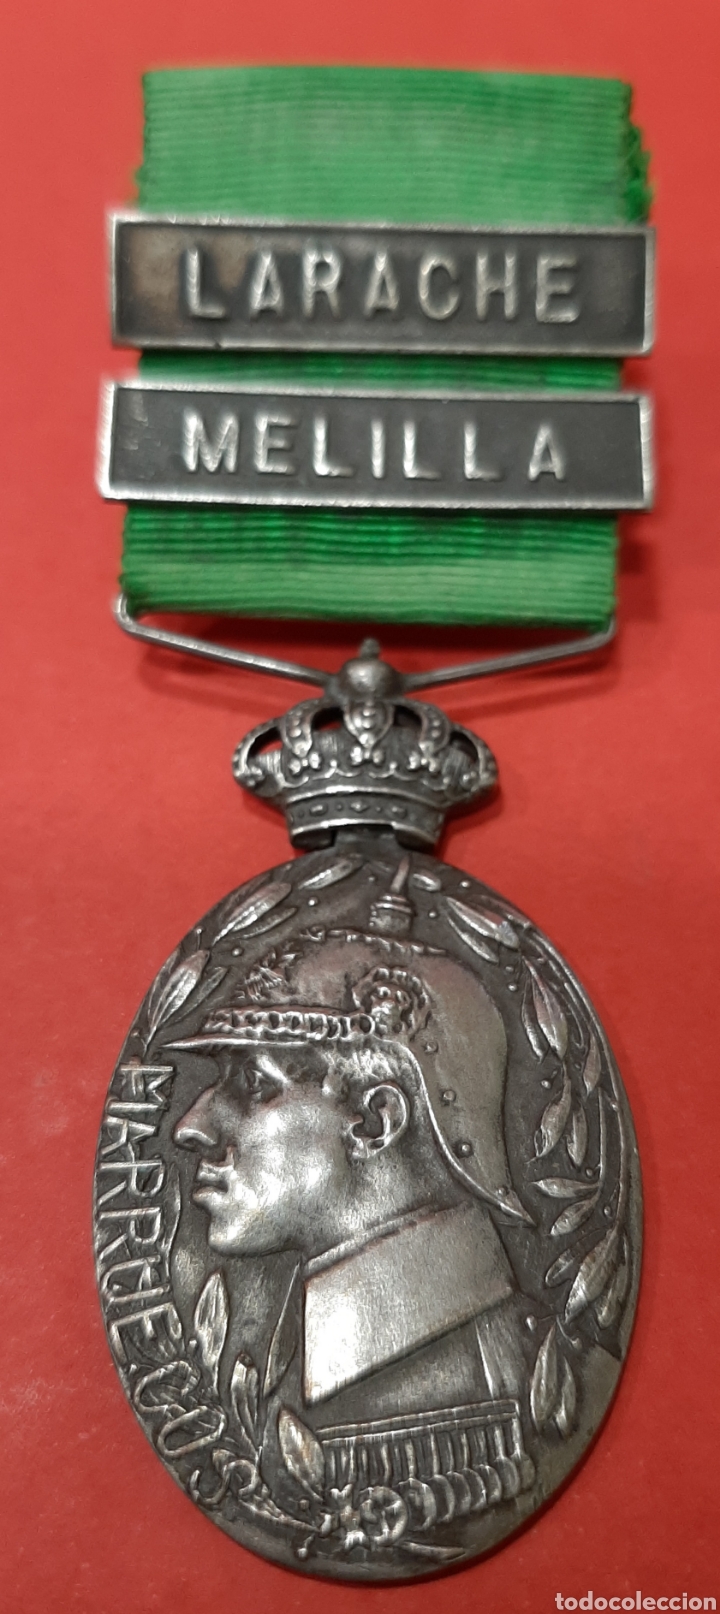 MEDALLA DE MARRUECOS, PLATA, PASADORES DE LARACHE Y MELILLA. (Militar - Medallas Españolas Originales )